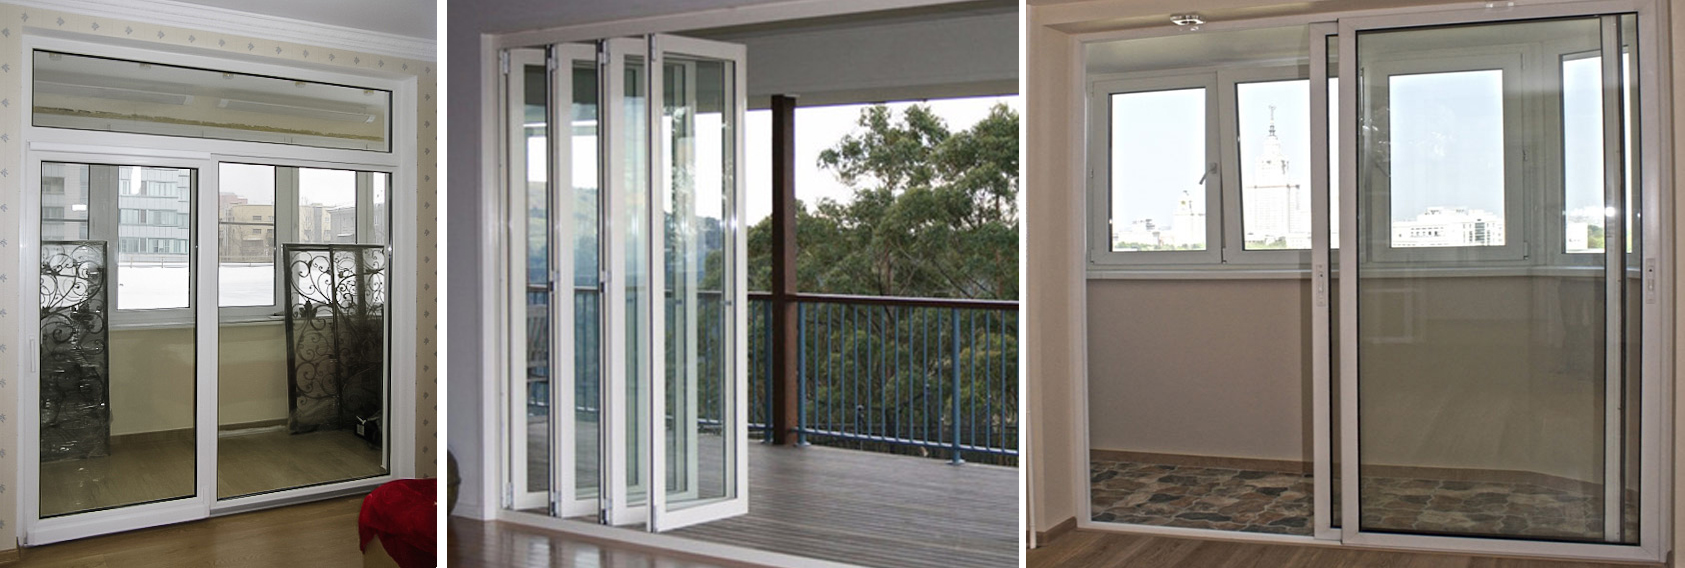 Пластиковые раздвижные двери на балкон в квартире из пвх: фото моделей